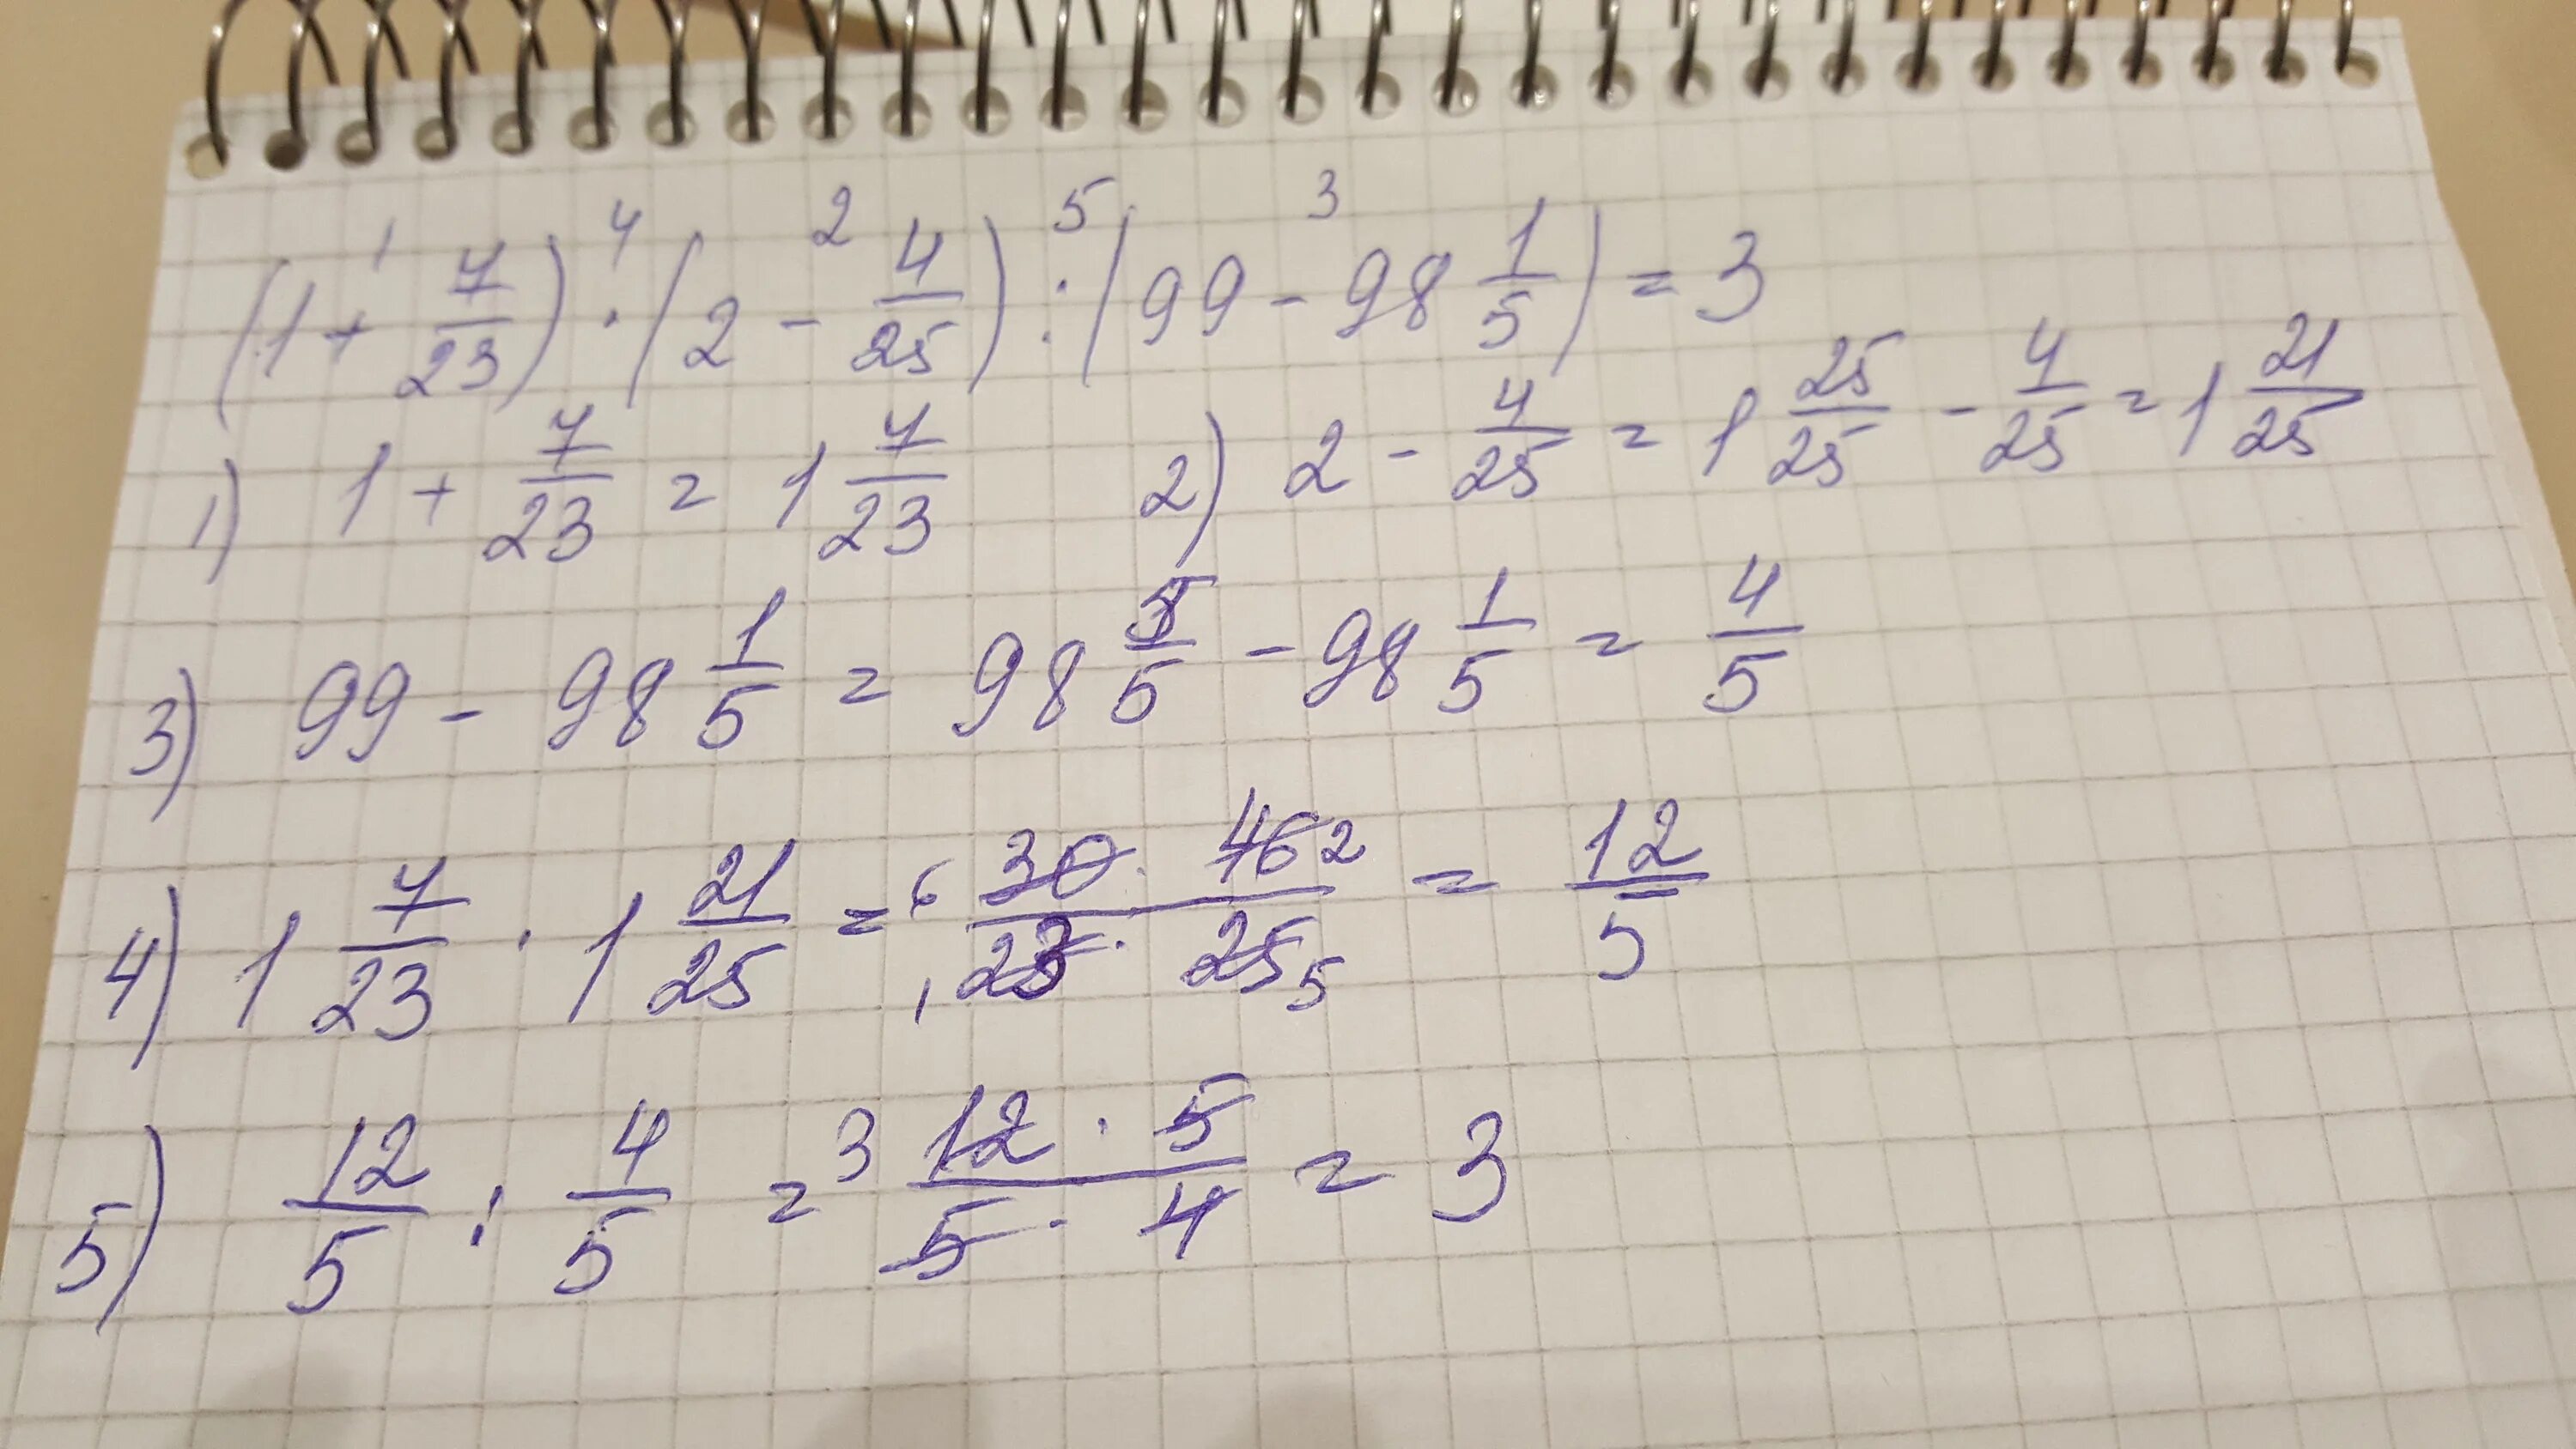 Реши пример 2 3 плюс 1 7. 1/6 Плюс 7/9. 3\4 Плюс 1\3. Плюс семь минус семь. 2 Умножить на 2.